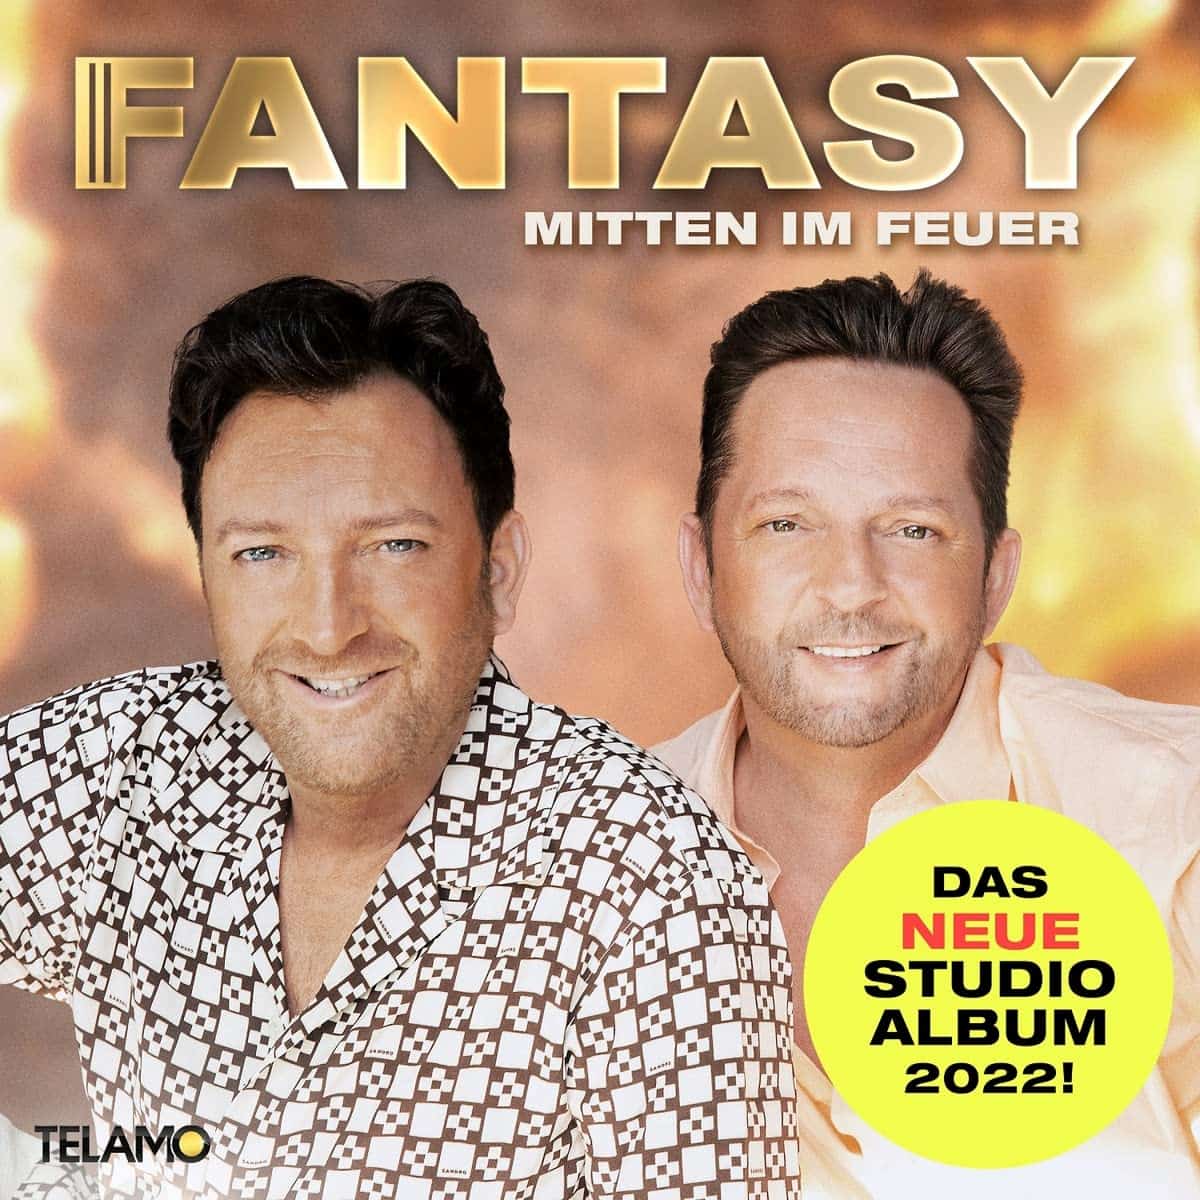 Fantasy CD “Mitten im Feuer” 2022